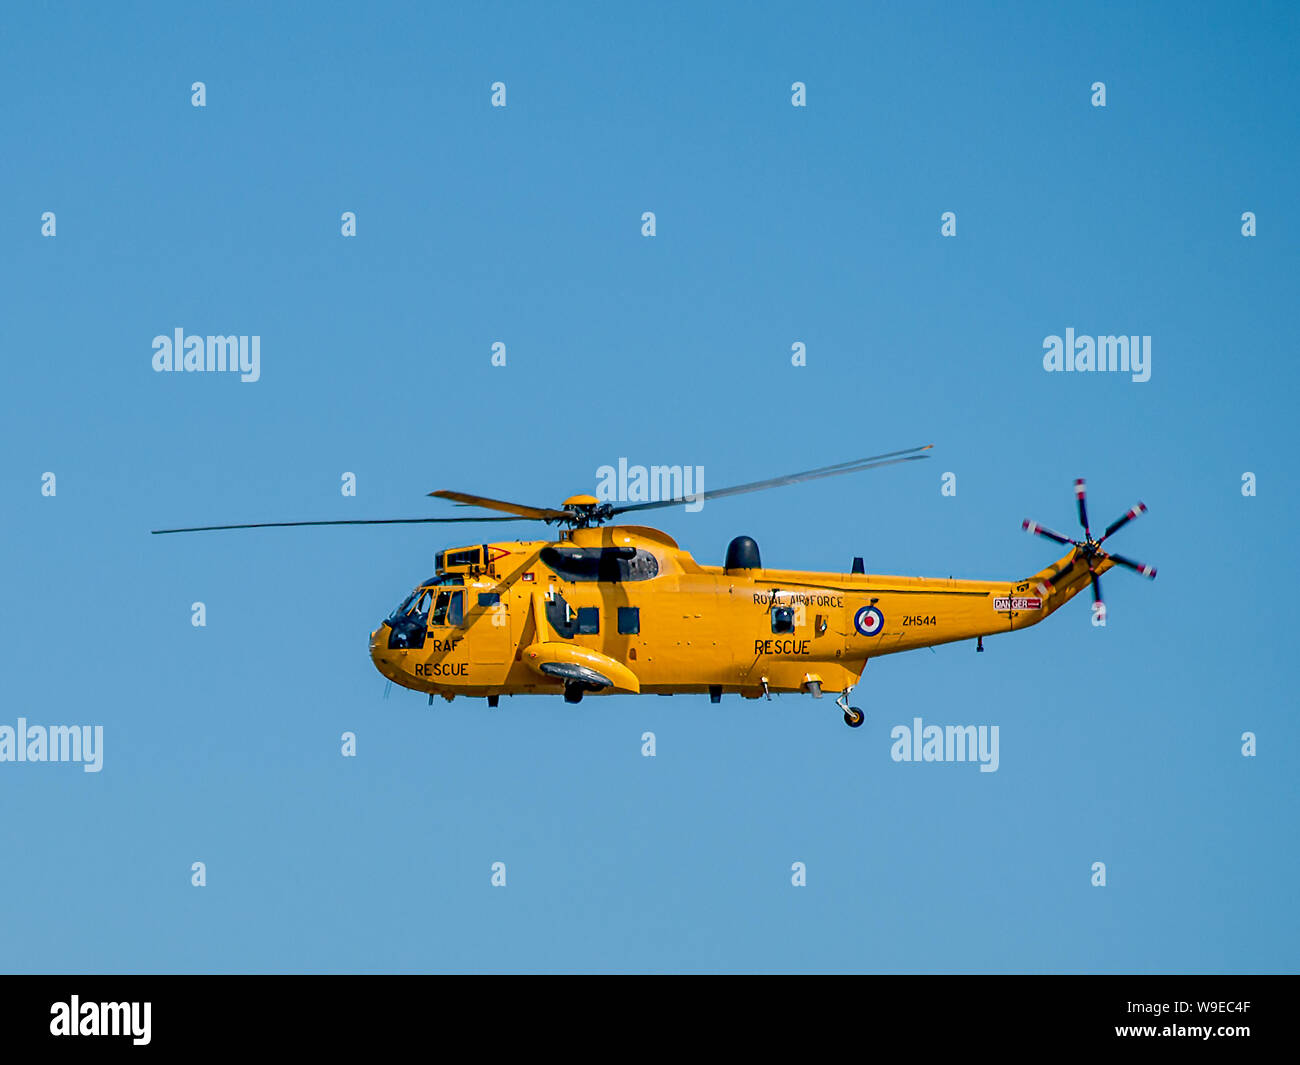 Hélicoptère de sauvetage de la RAF jaune Vue de dessus Knab Rock dans la Baie de Swansea Swansea pendant Air Show 2009. Swansea, Pays de Galles, Royaume-Uni. Banque D'Images